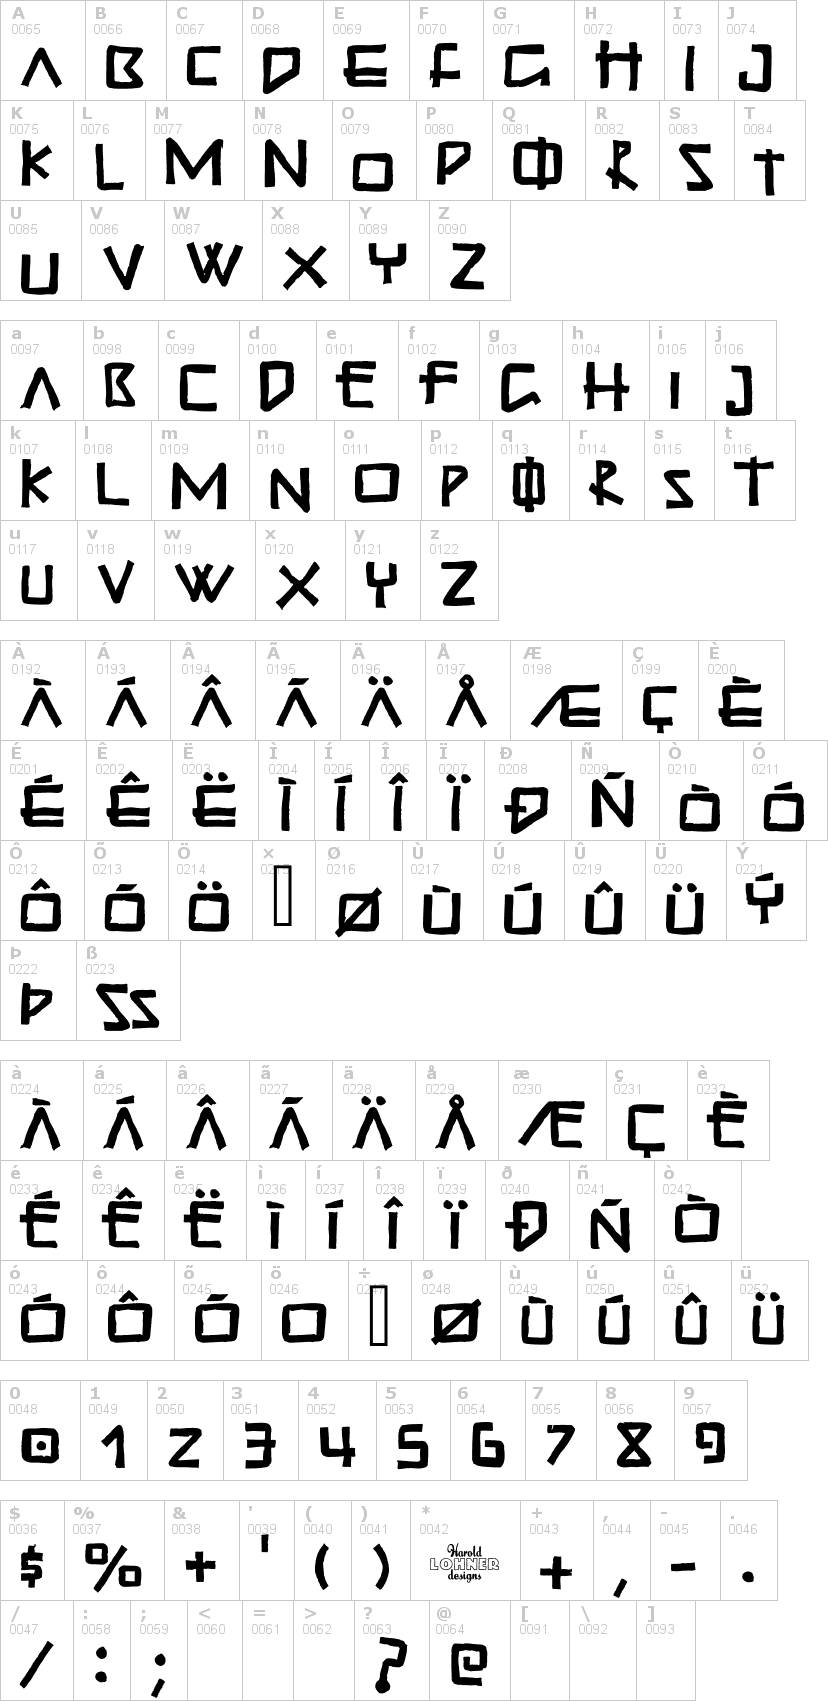 Lettere dell'alfabeto del font guadalupe con le quali è possibile realizzare adesivi prespaziati